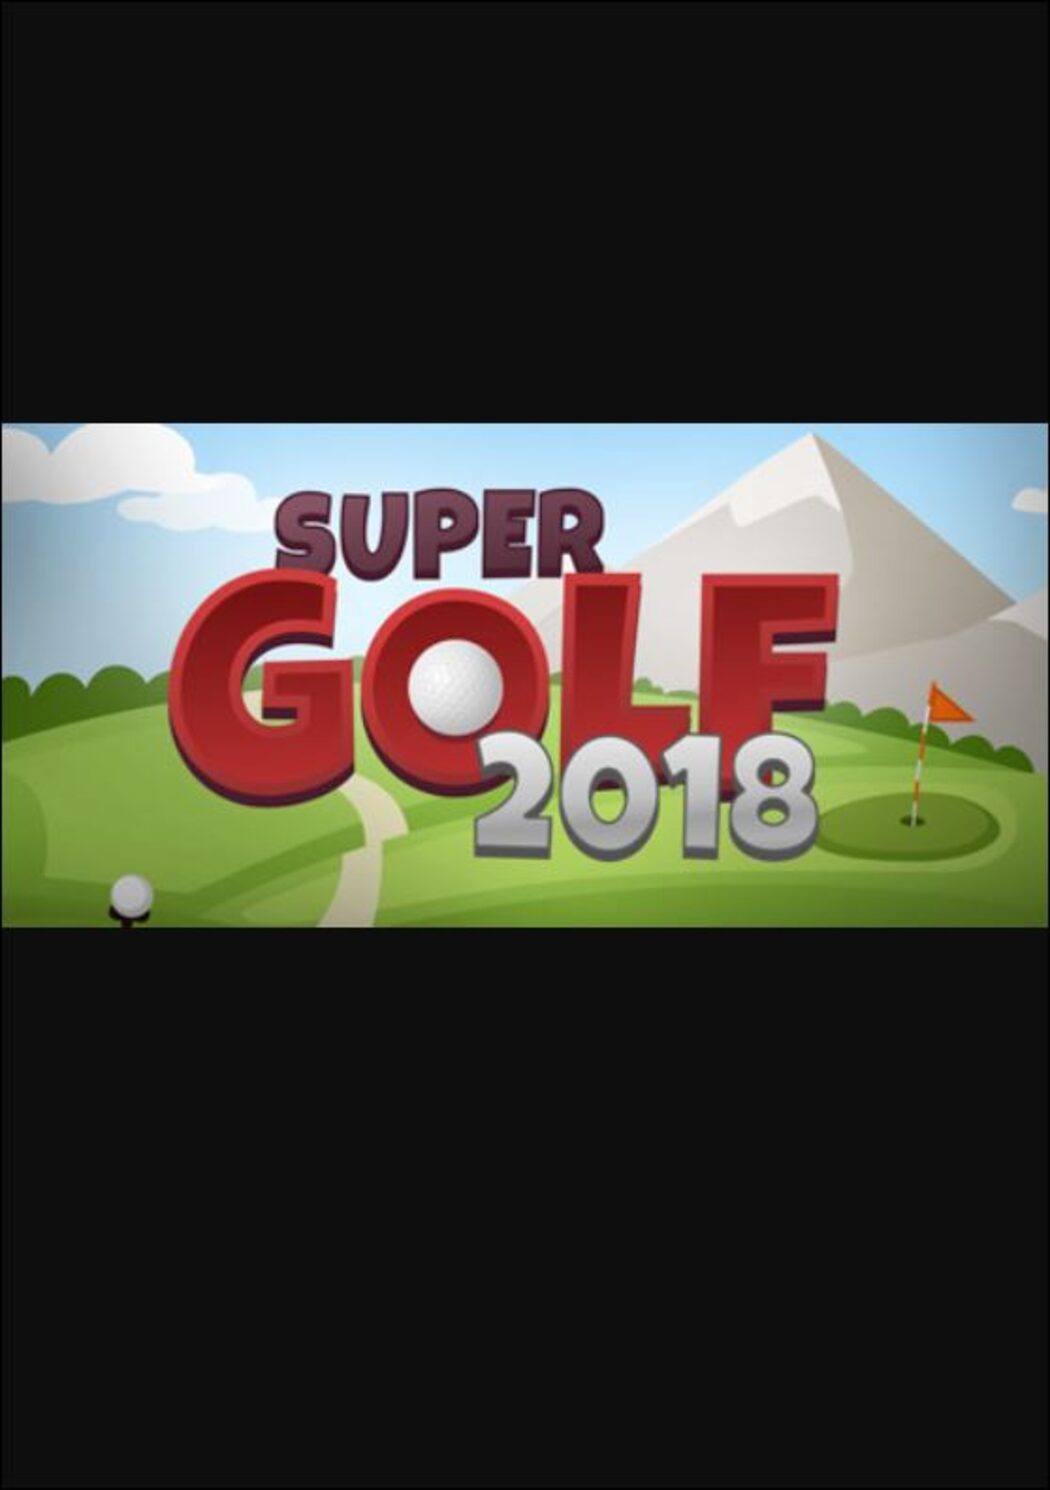 Super Golf 2018 on Steam